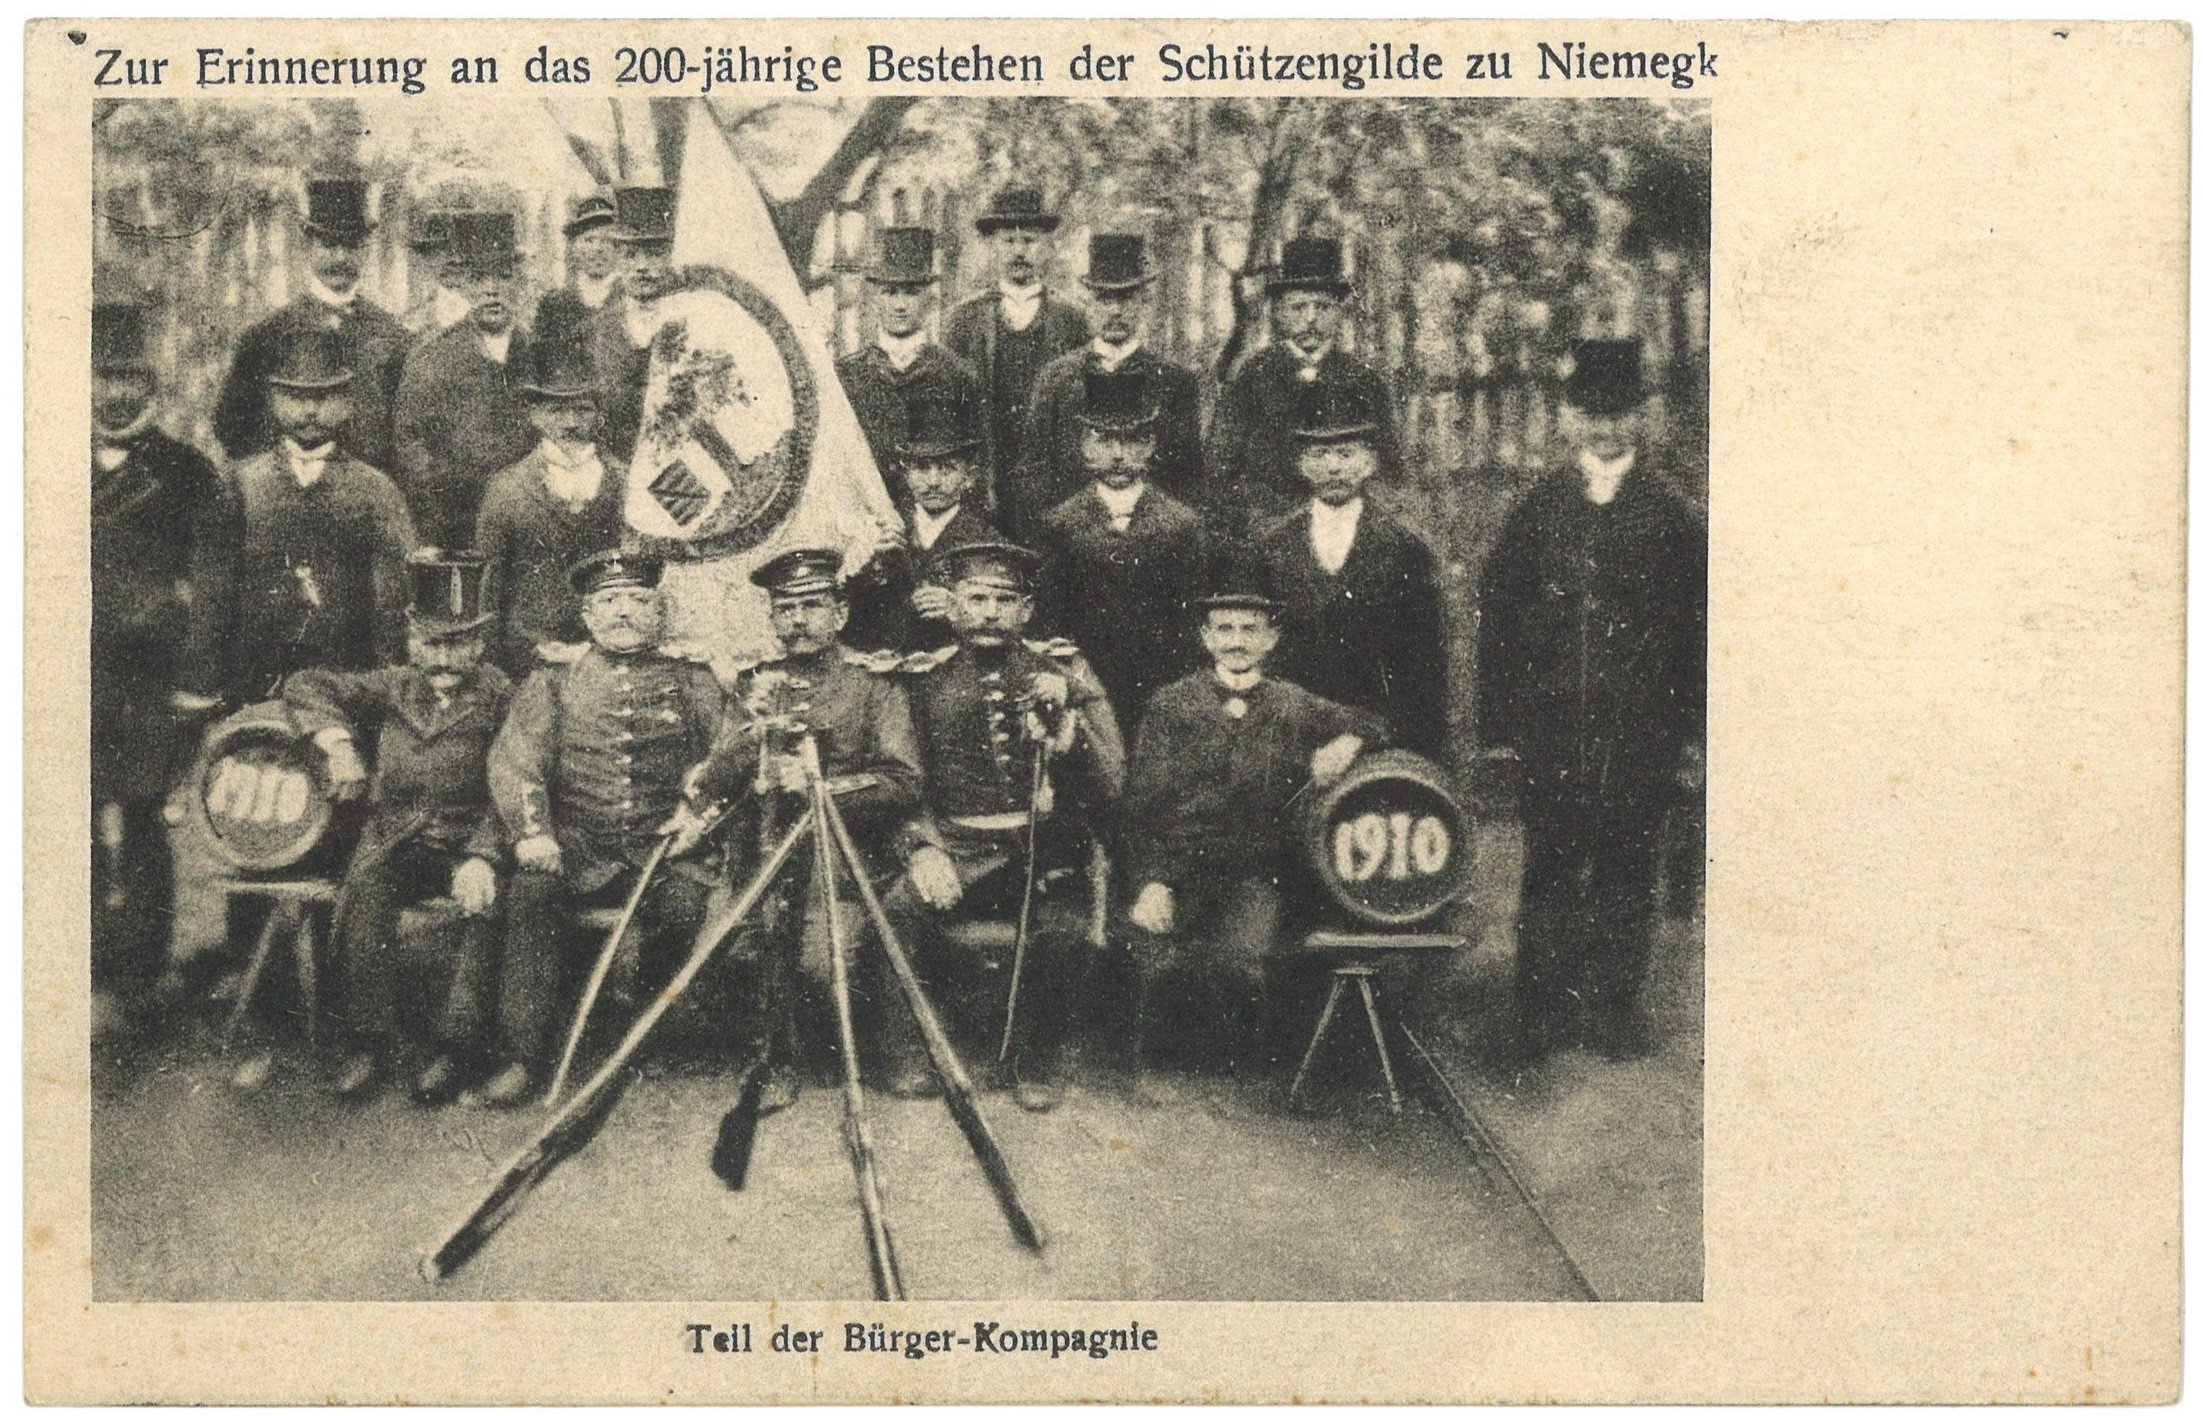 Niemegk: 200-Jahrfeier der Schützengilde 1910, Bürger-Kompagnie (Landesgeschichtliche Vereinigung für die Mark Brandenburg e.V., Archiv CC BY)